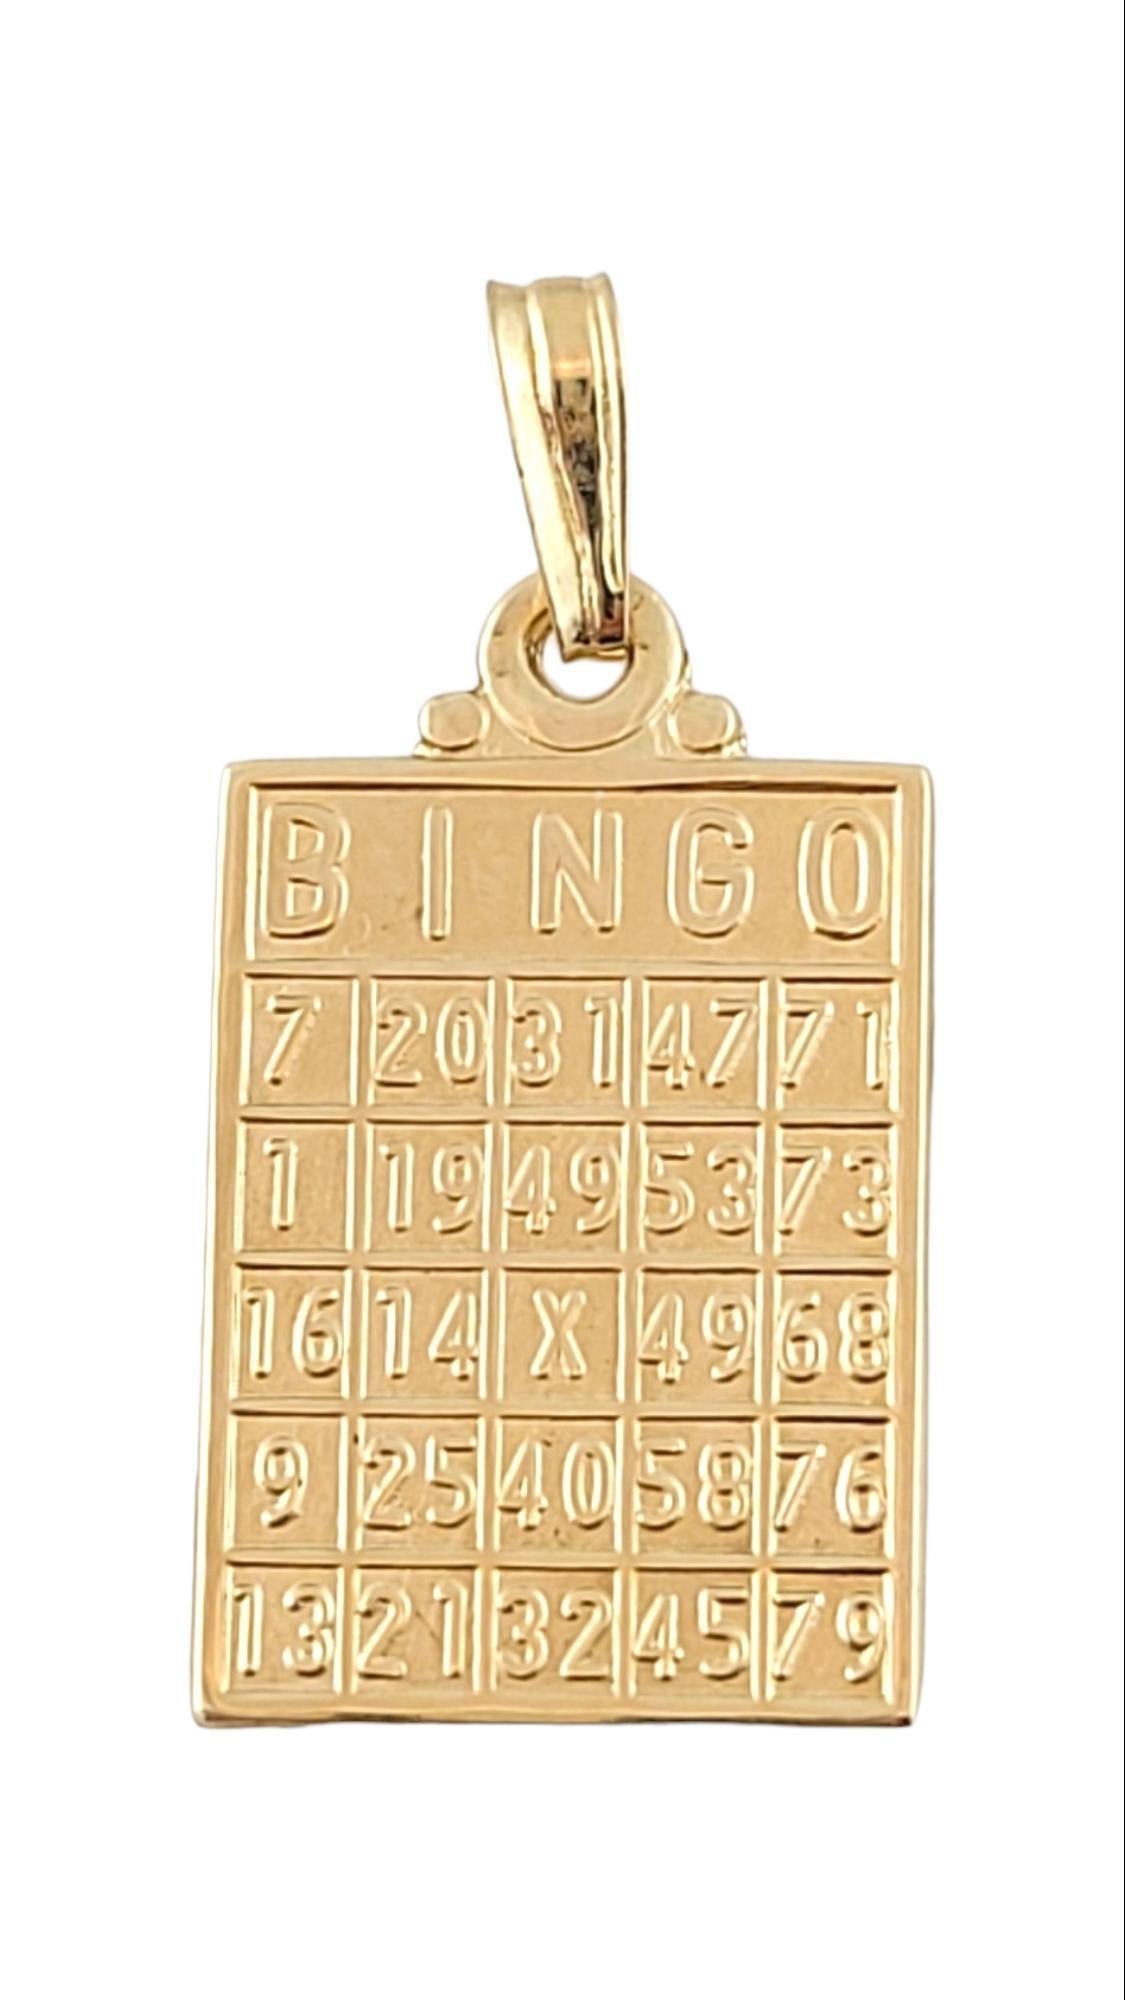 14K Gelbgold Bingo Karte Charme

Diese entzückende 14K Gold Charme verwendet perfekte Detaillierung, um eine Bingo-Karte darstellen und würde das beste Geschenk für ein Bingo-Liebhaber zu machen!

Größe: 19,6 mm x 11,9 mm x 0,5 mm
Länge mit Bügel: